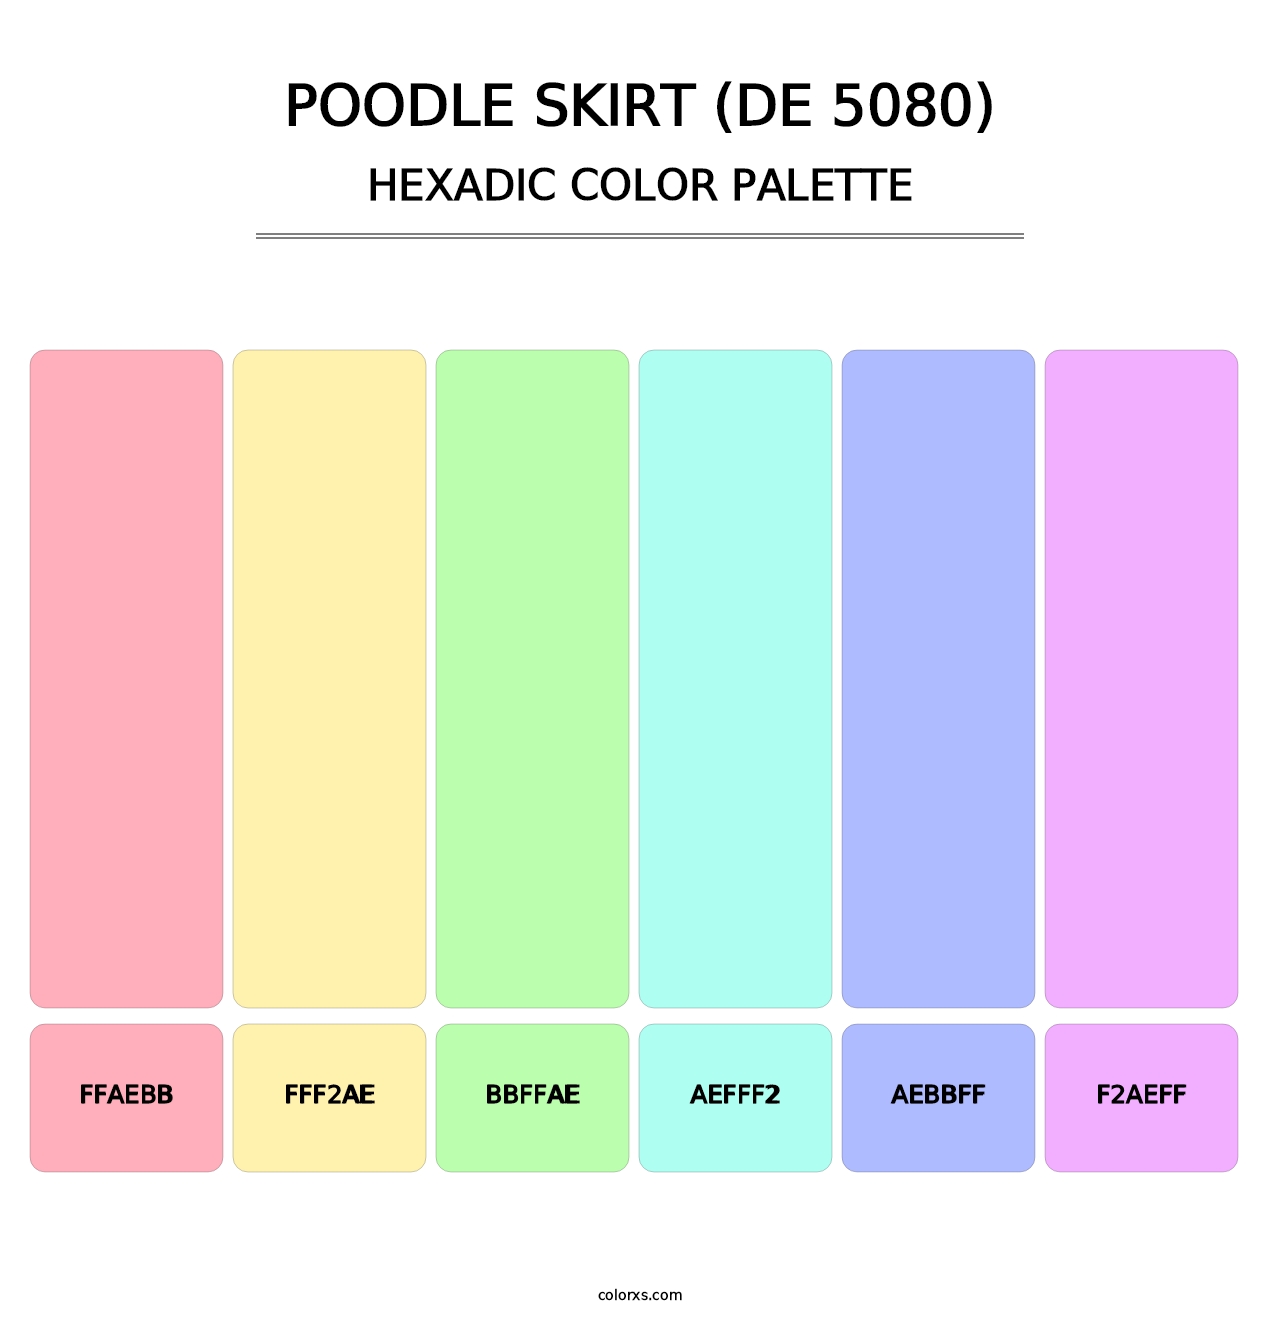 Poodle Skirt (DE 5080) - Hexadic Color Palette